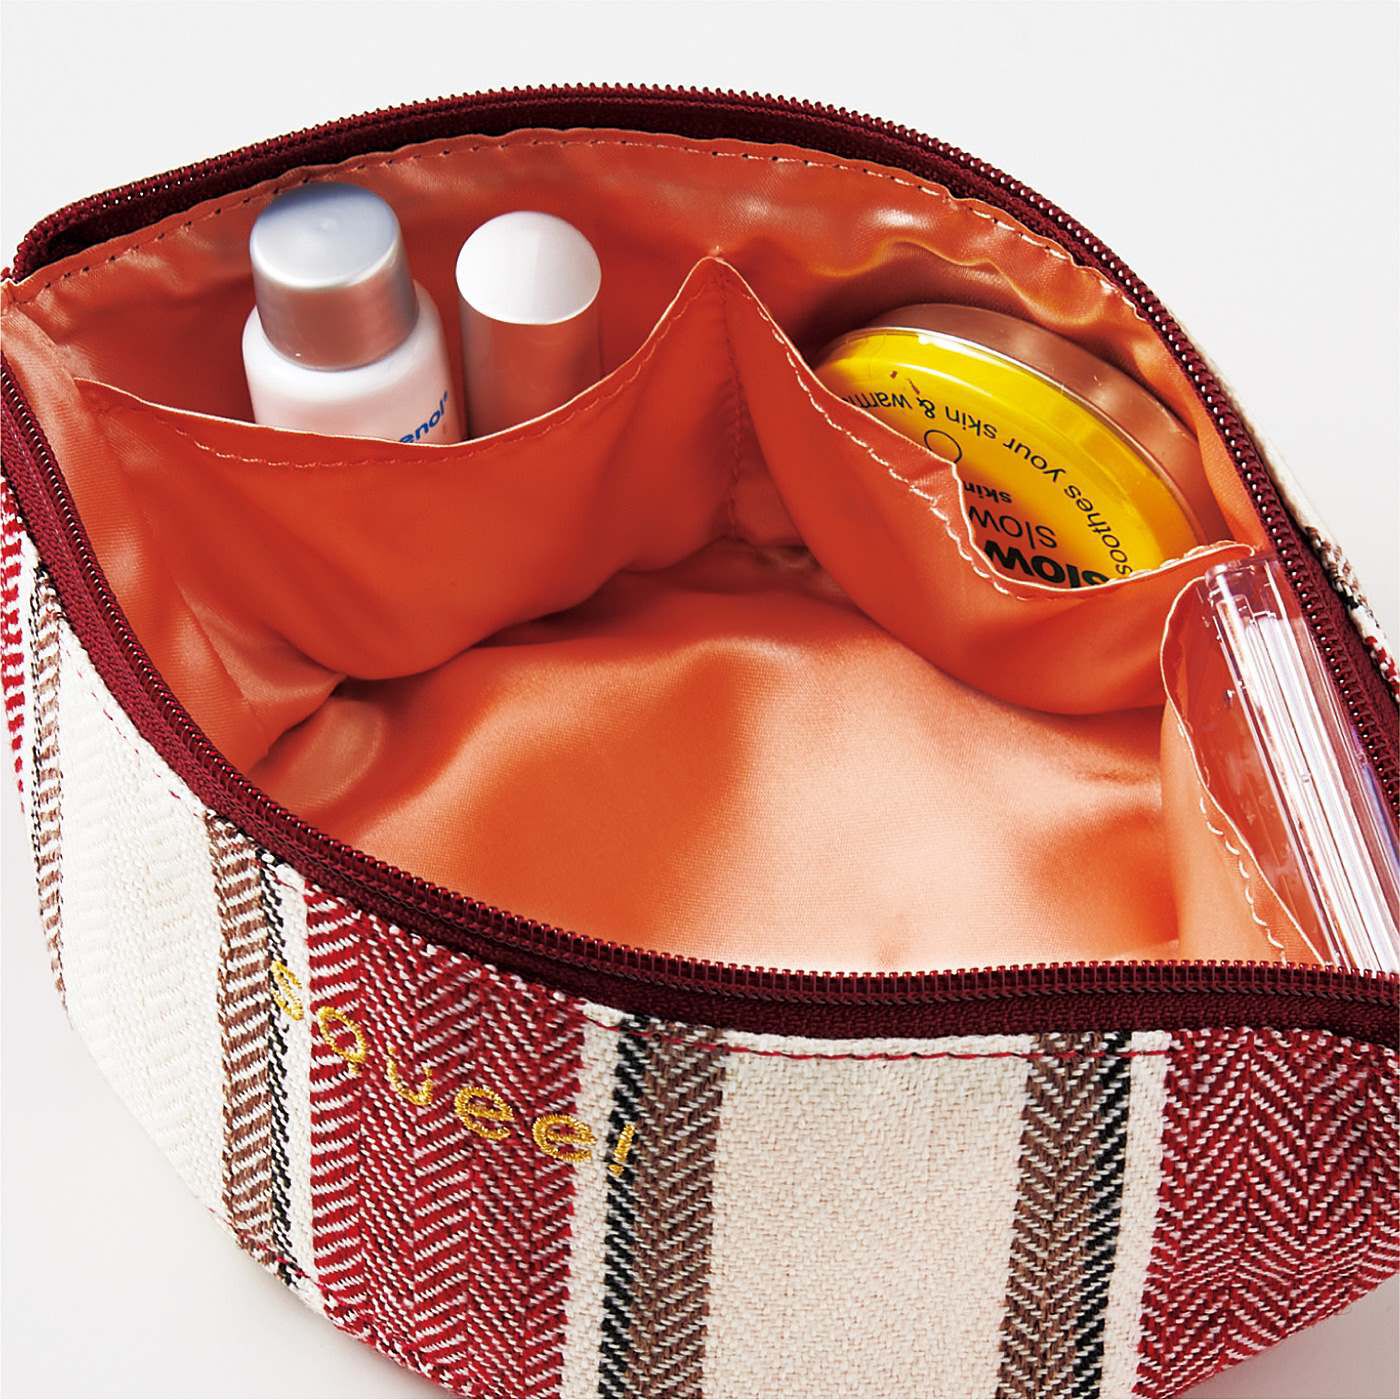 フェリシモの雑貨 Kraso|Squee!　三日月型で内ポケットが便利なフレキシブルトレイポーチの会|アクセやリップなどの小物の仕分けに便利な3つの内ポケット。